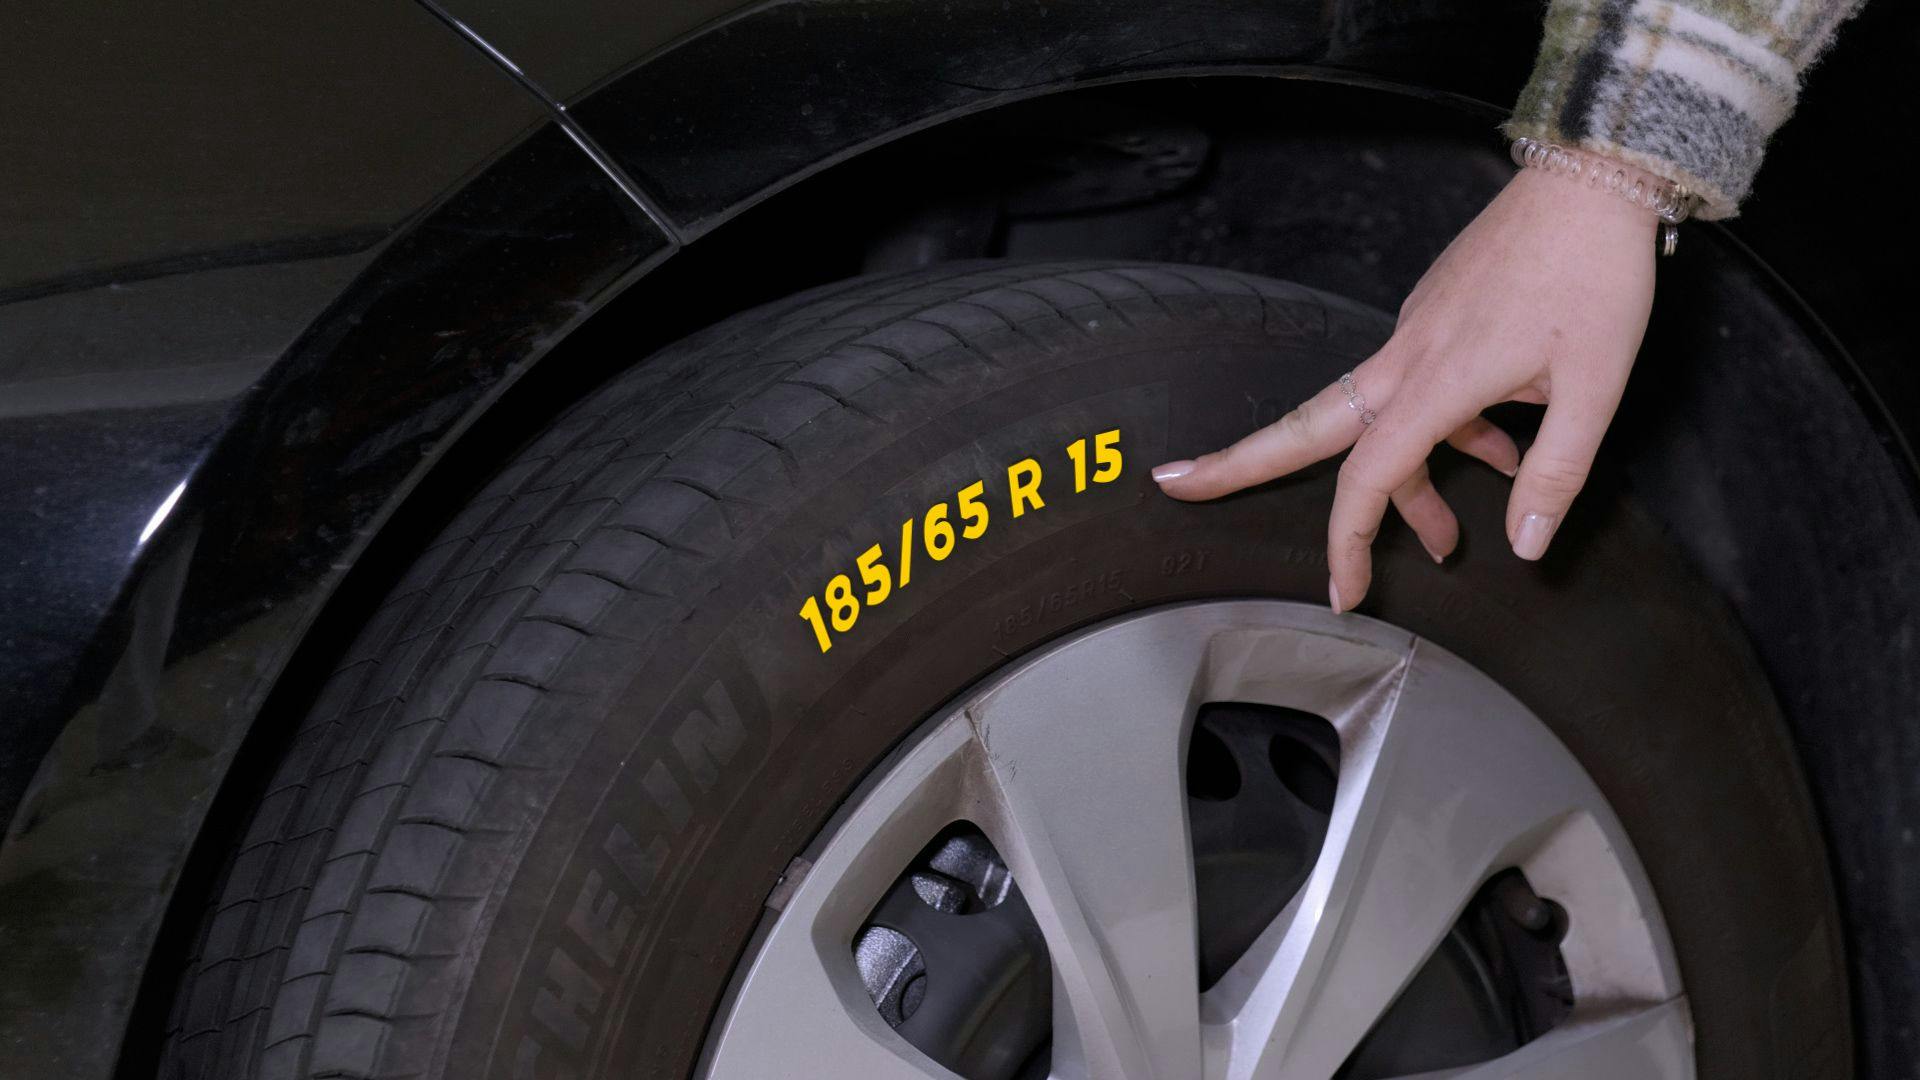 Les dimensions des pneumatiques se trouvent sur le flan du pneu.